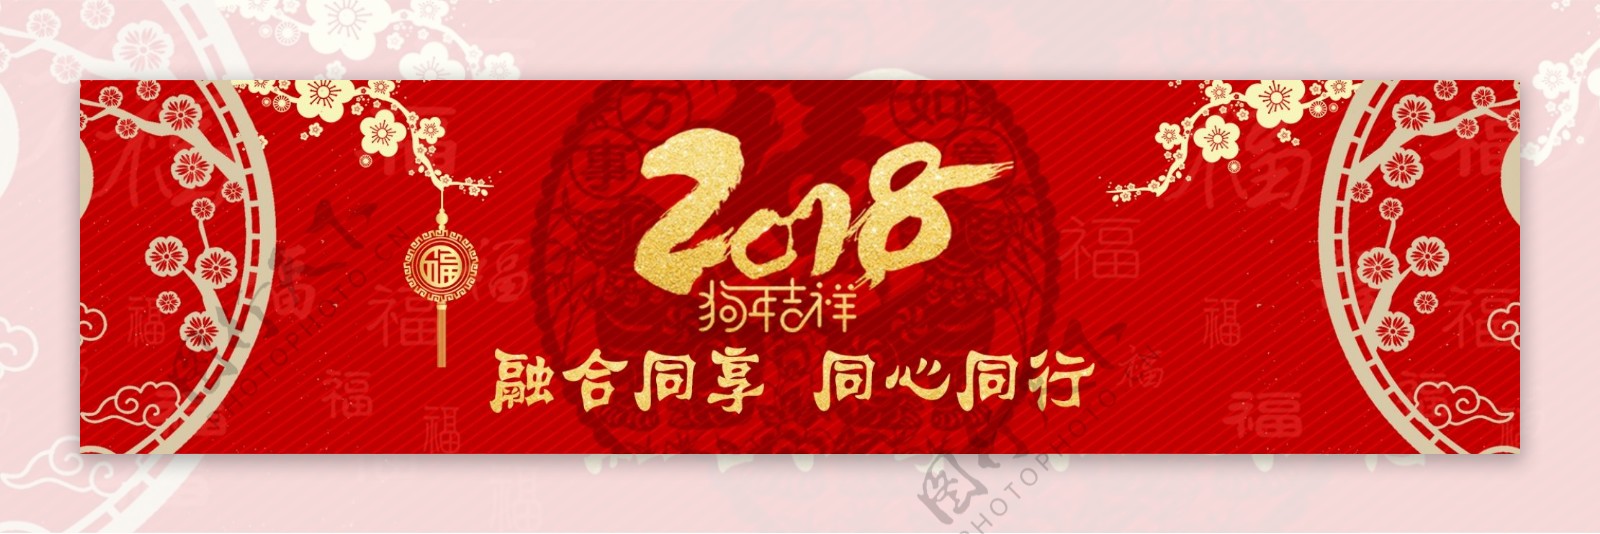 2018年红色春节节日banner